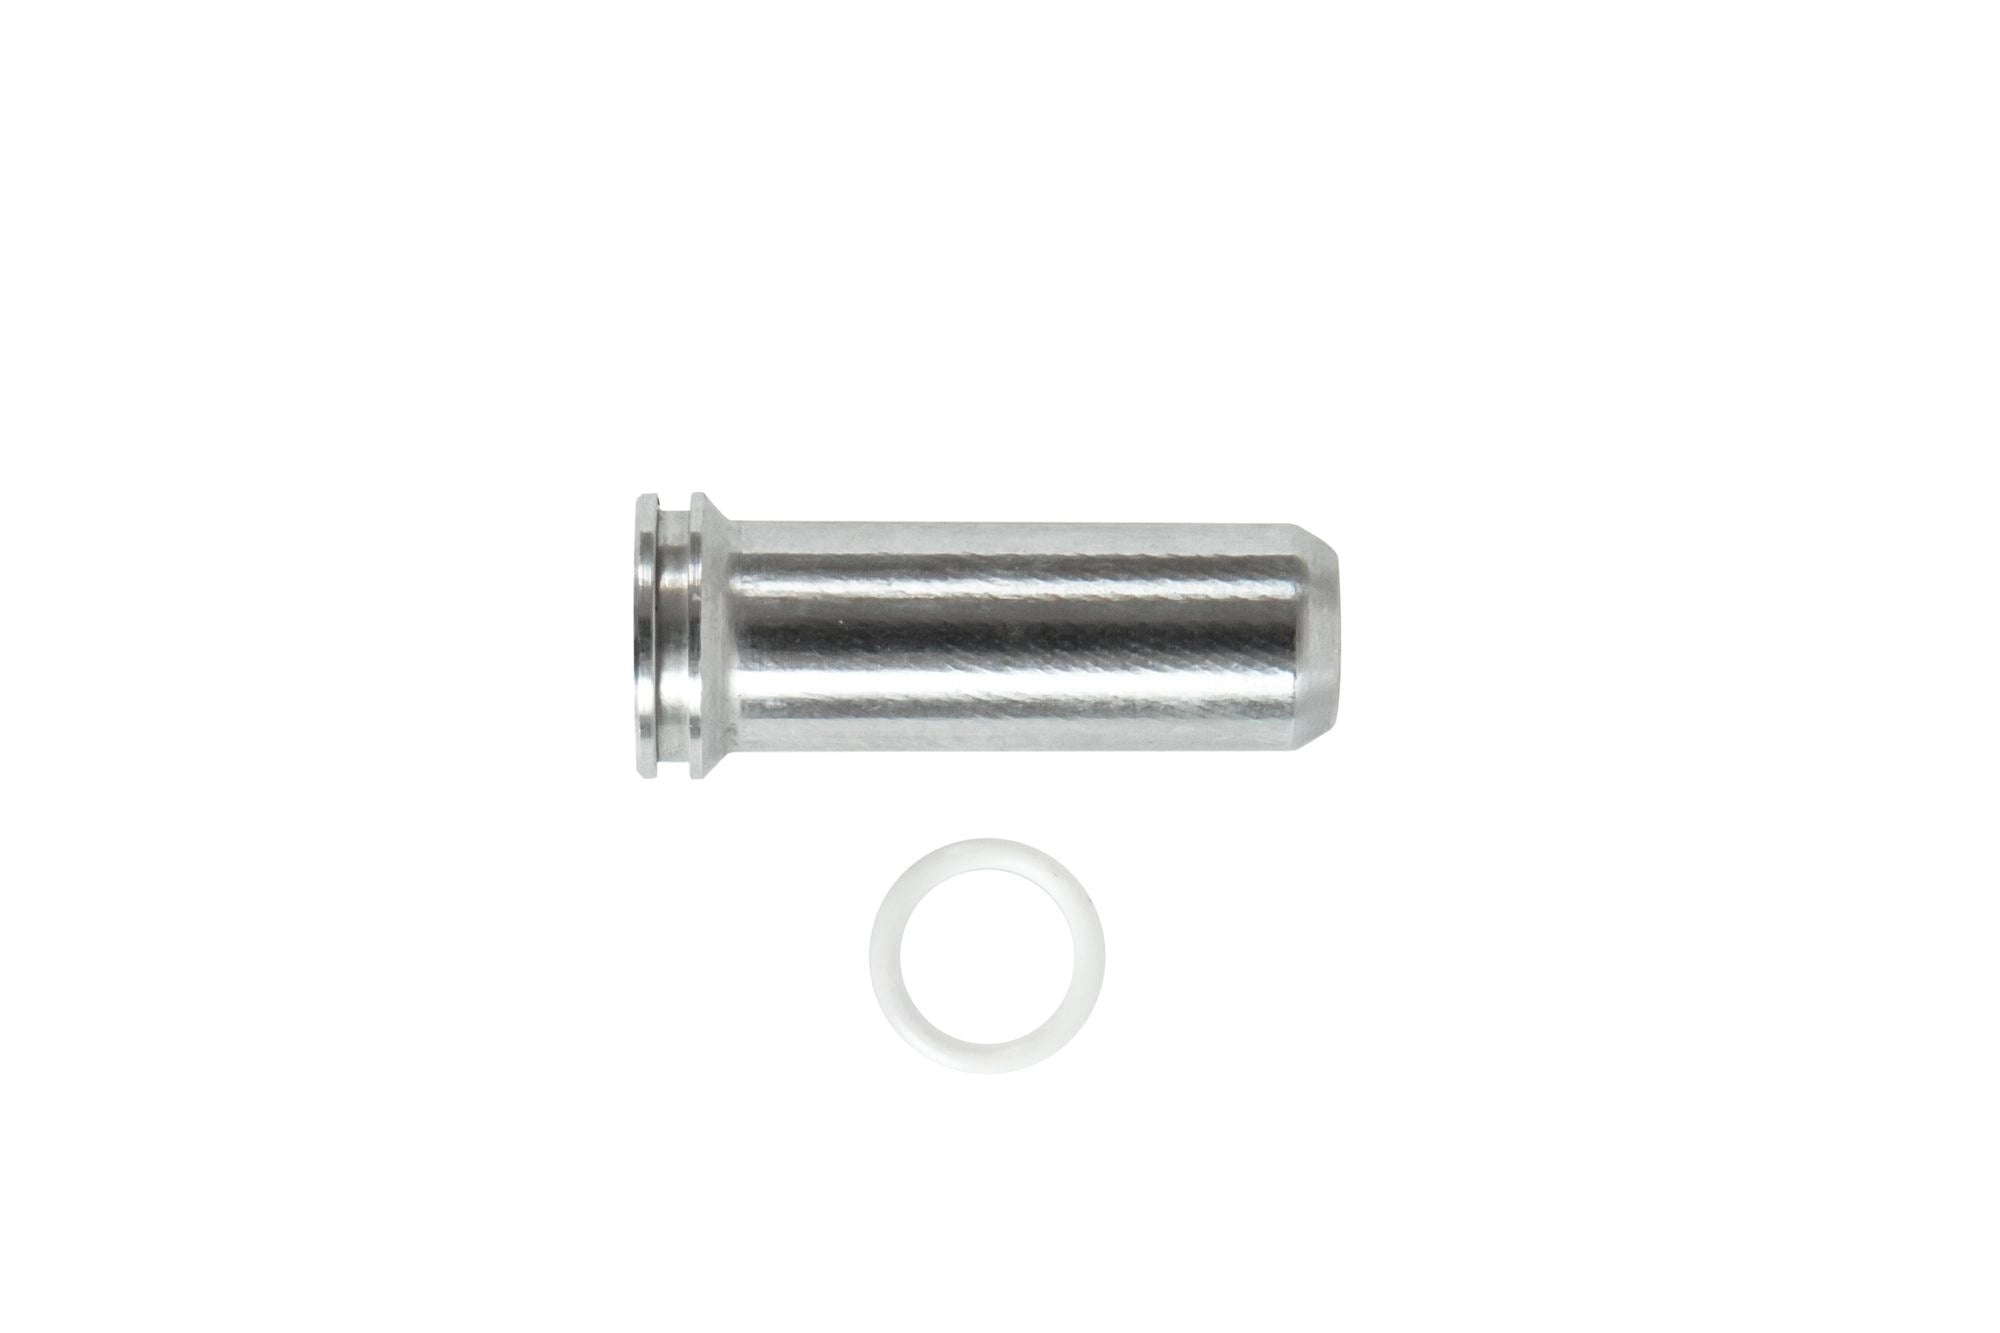 Aluminum CNC Nozzle - 24.8 mm